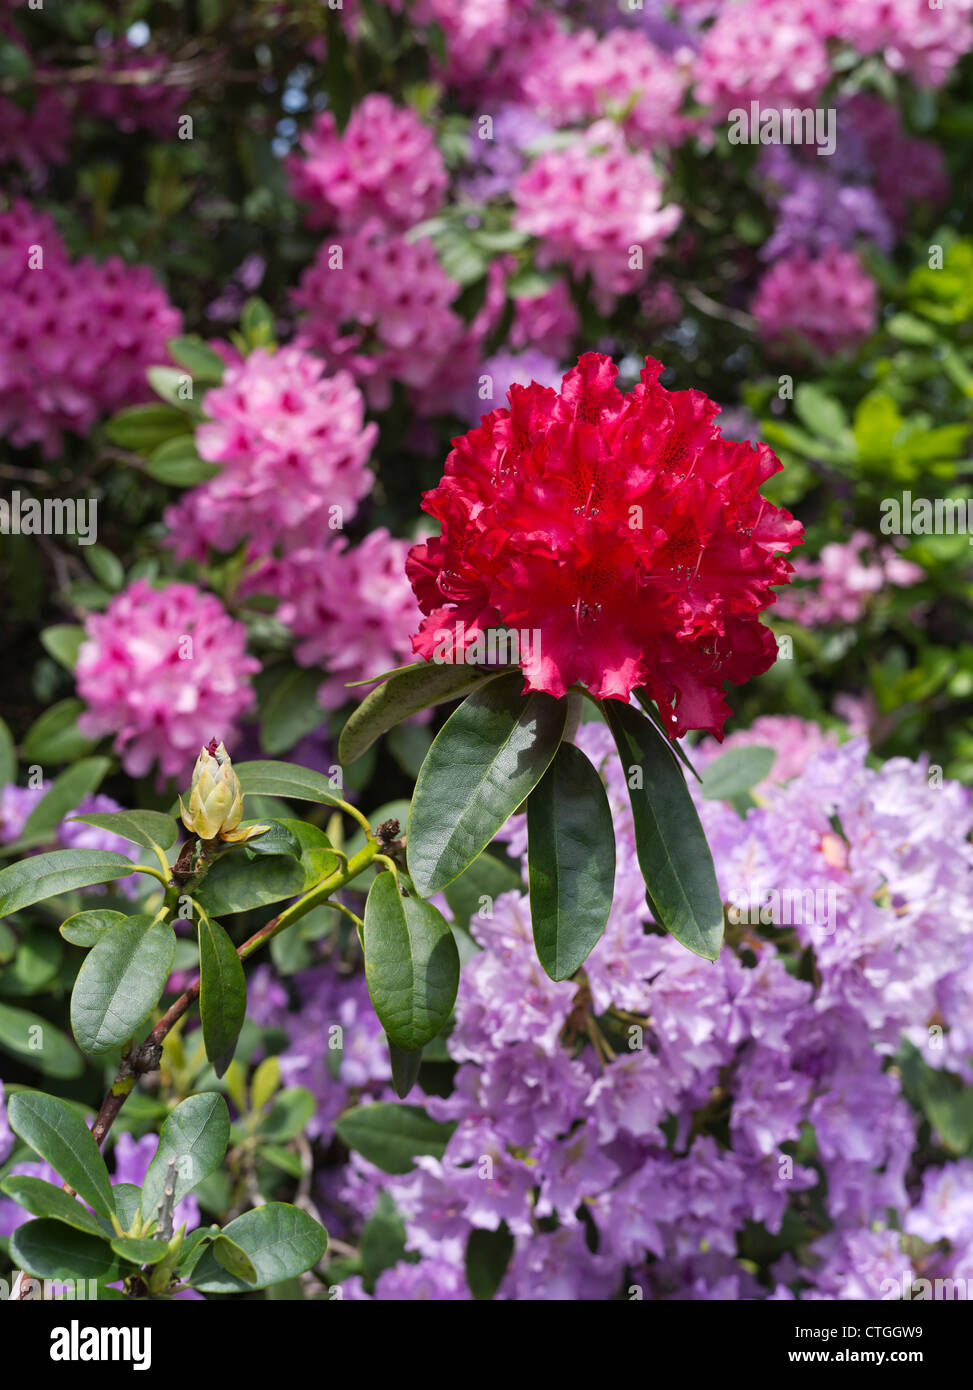 dh Rhododendron ponticum BEAULIEU HAMPSHIRE Rote Farbe Blume lila Sträucher blühende Busch Gartenblumen uk Gärten blühenden neuen Wald Rhododendrons Stockfoto